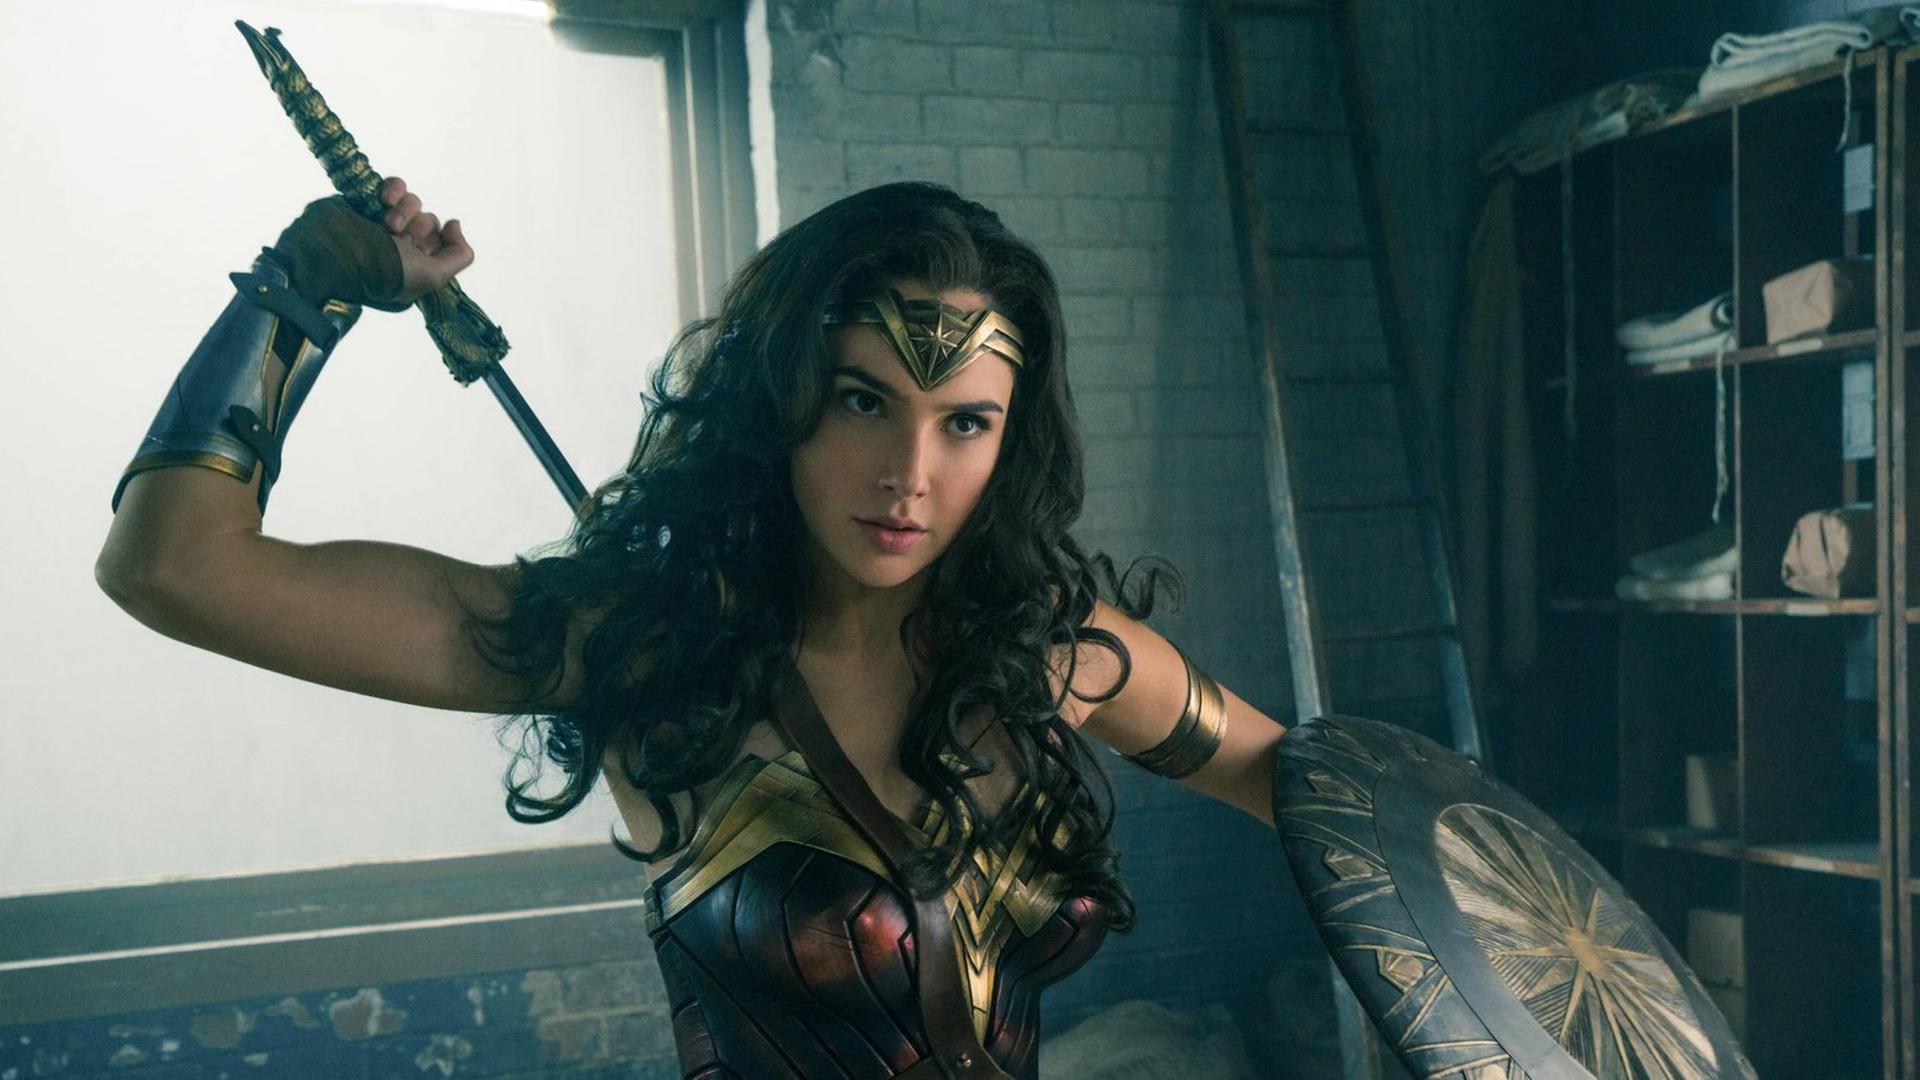 Der letzte "Wonder Woman"-Film hat an den Kinokassen die Erwartungen übertroffen. Am Eröffnungswochenende wurden in Nordamerika 103,1 Millionen Dollar eingespielt. Die Hauptrolle in dem Film von Patty Jenkins spielt Gal Gadot.